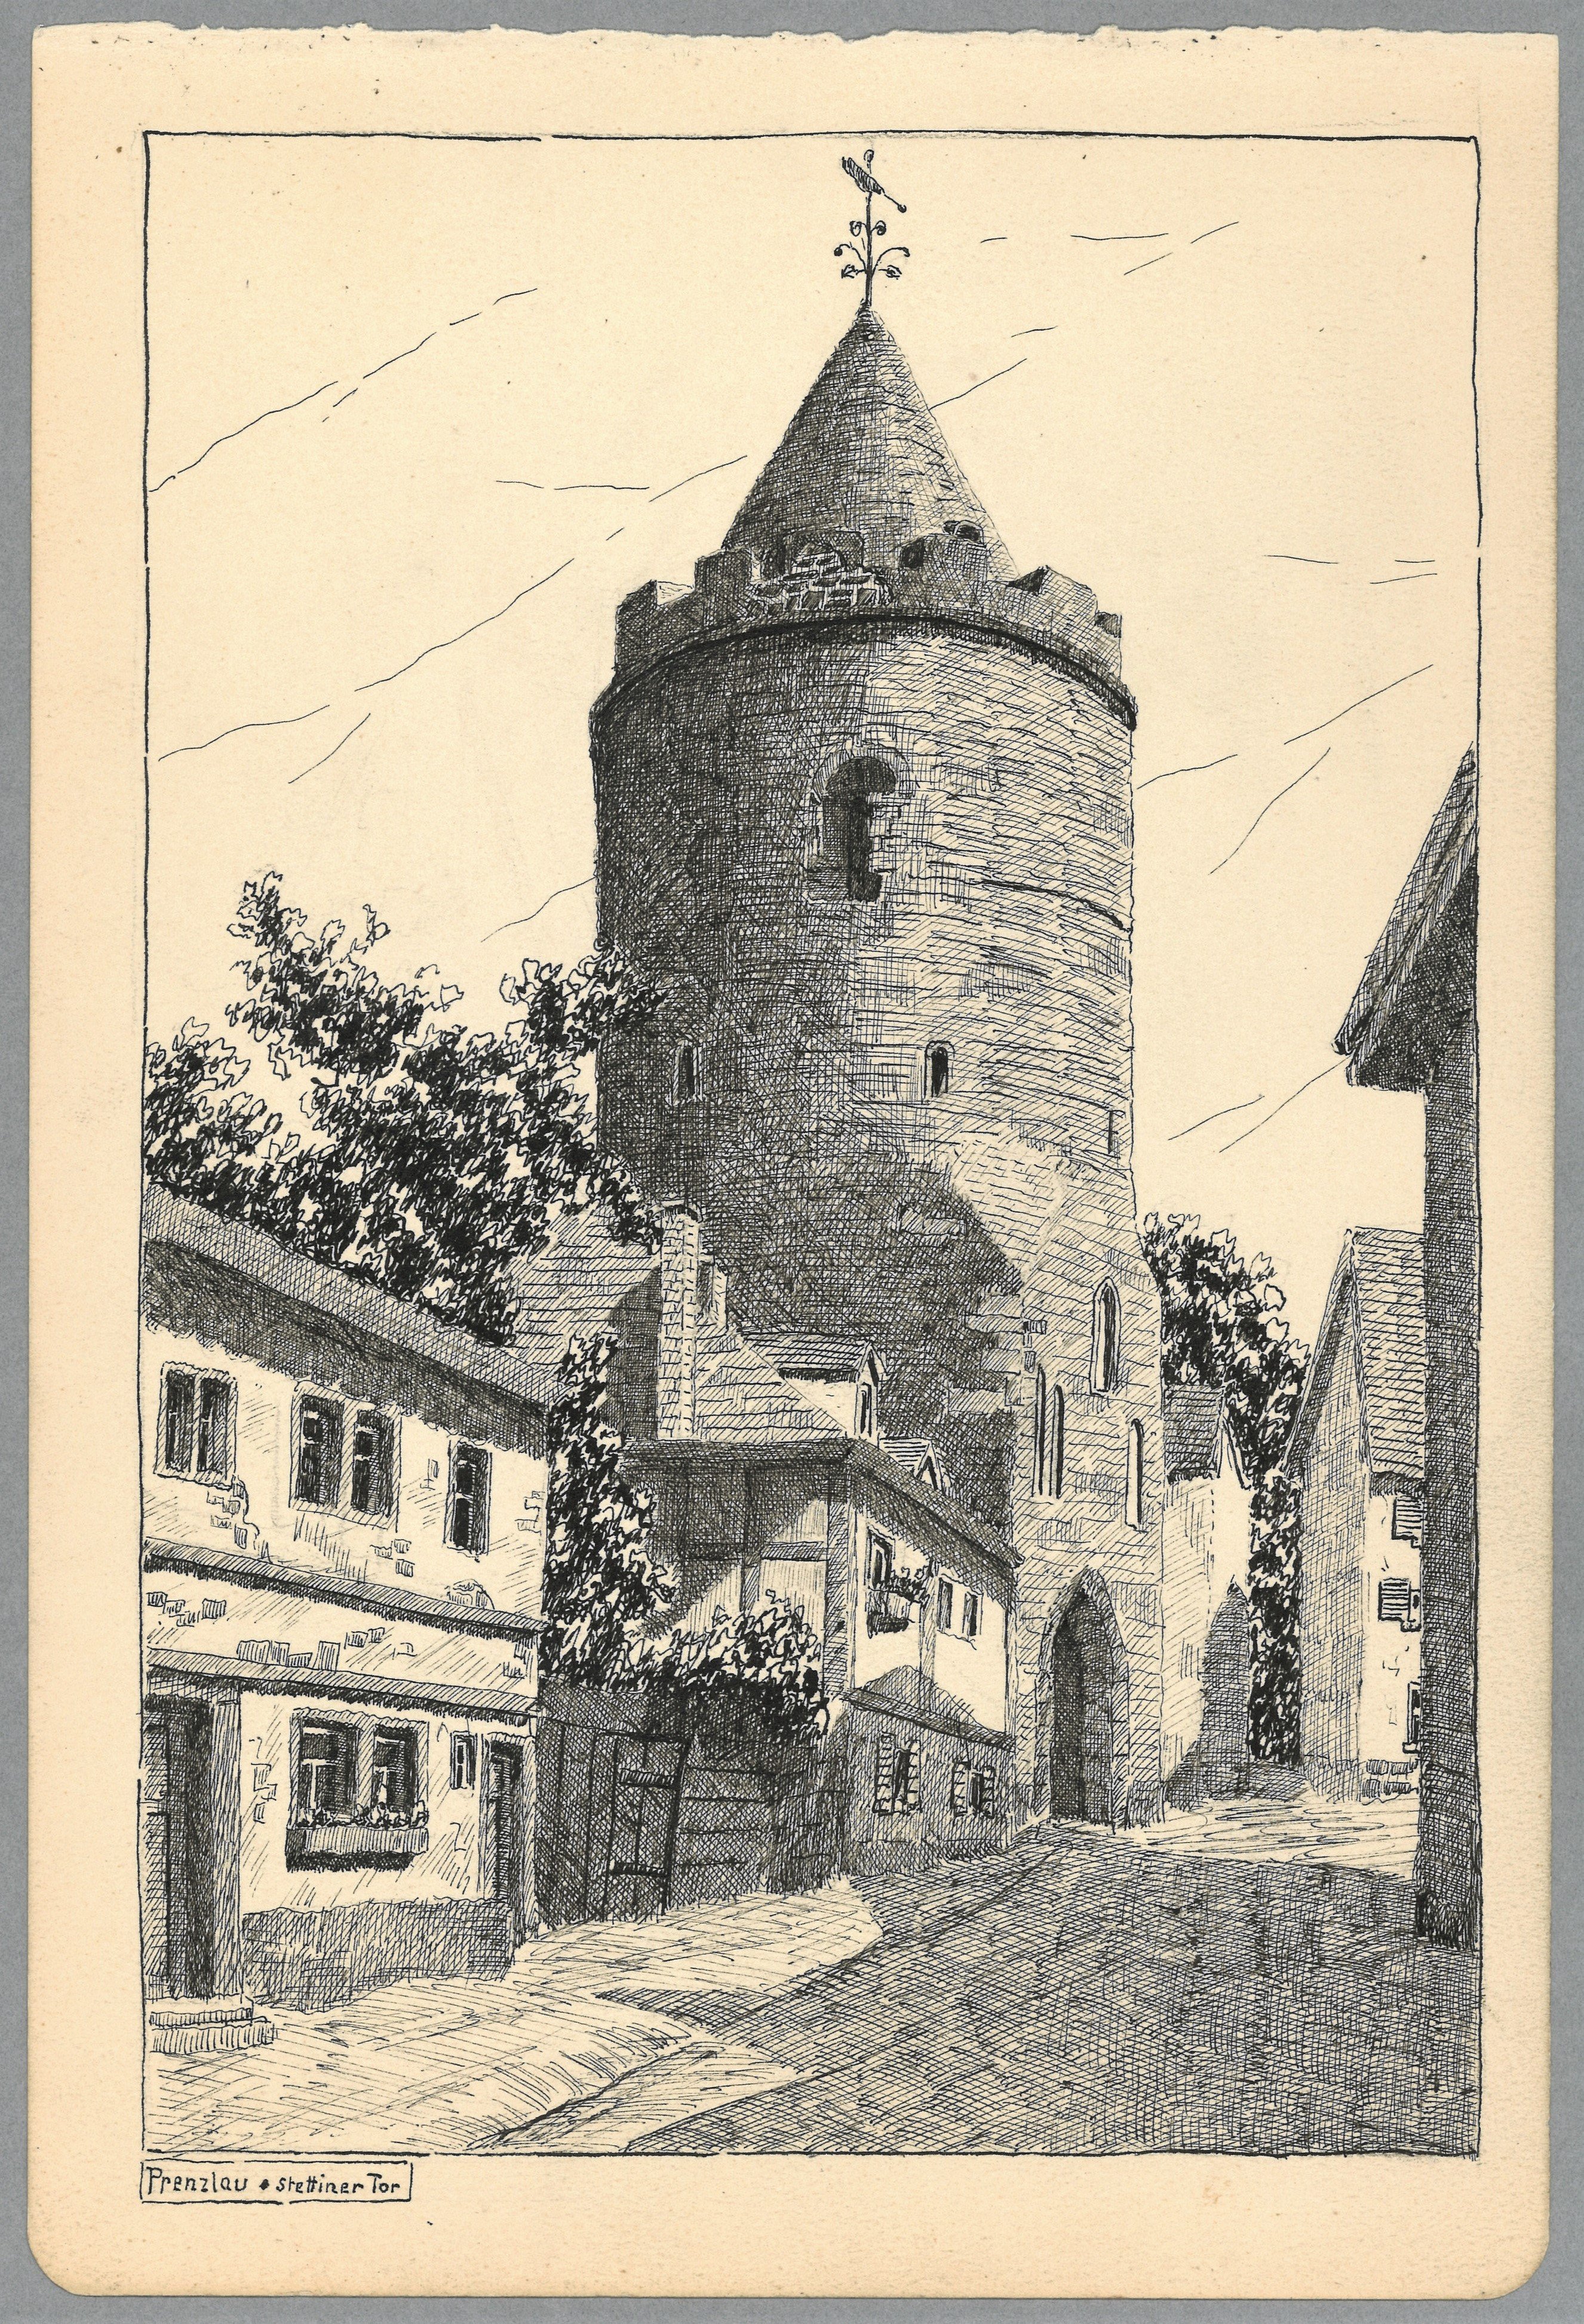 Prenzlau: Stettiner Tor (Landesgeschichtliche Vereinigung für die Mark Brandenburg e.V., Archiv CC BY)